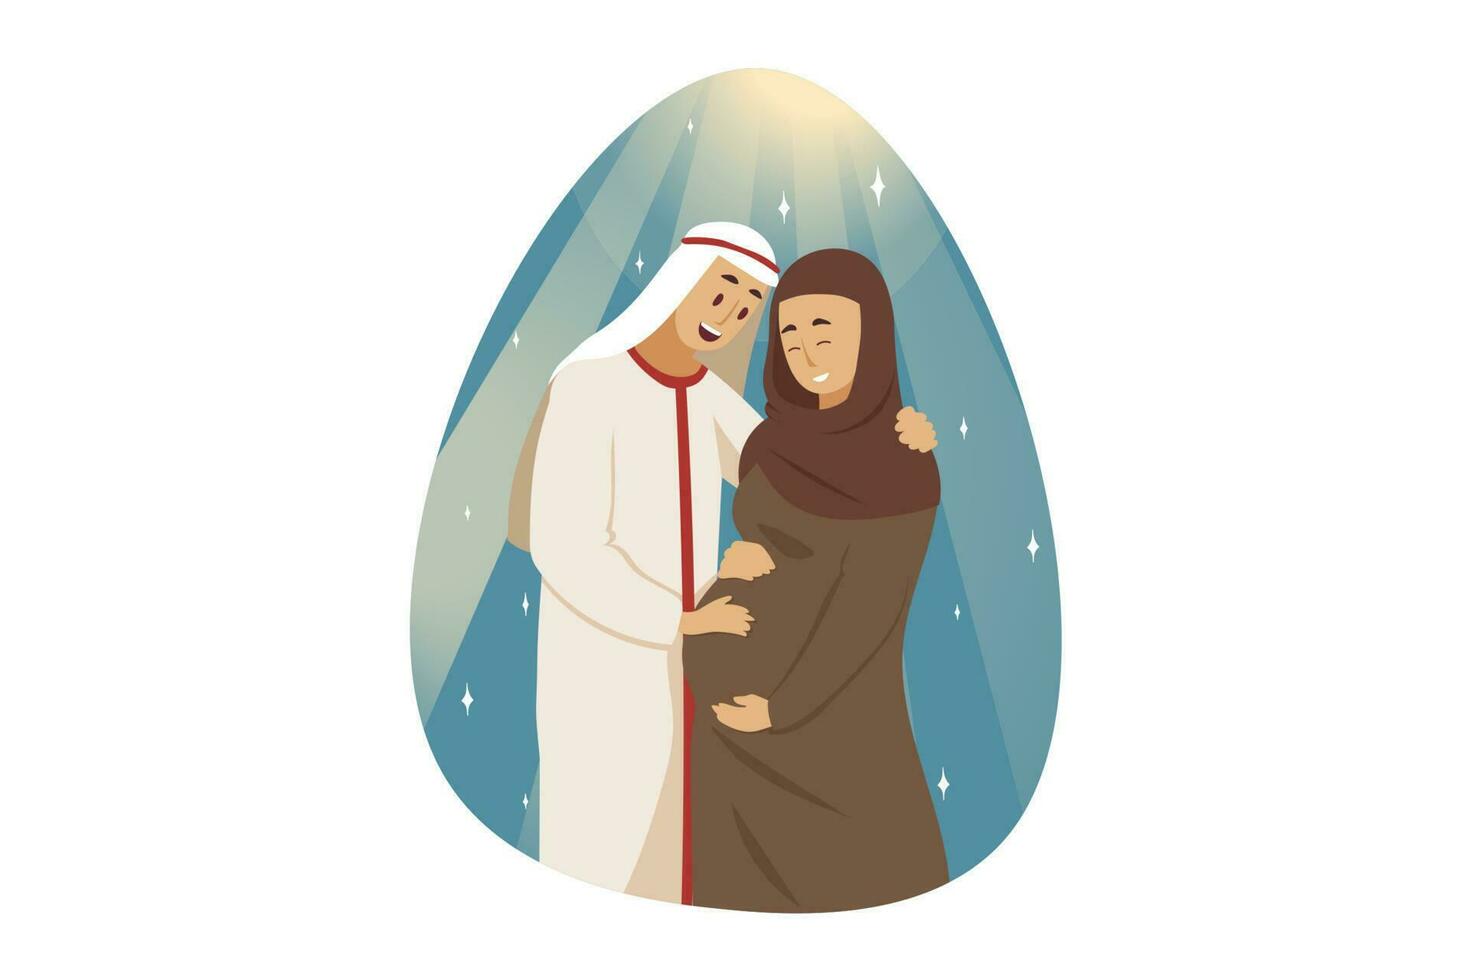 amore, coppia, gravidanza, famiglia concetto. giovane contento uomo musulmano fidanzato marito in piedi con sorridente incinta donna moglie fidanzata arabo con hijab abbracciare insieme. festa della mamma e maternità. vettore